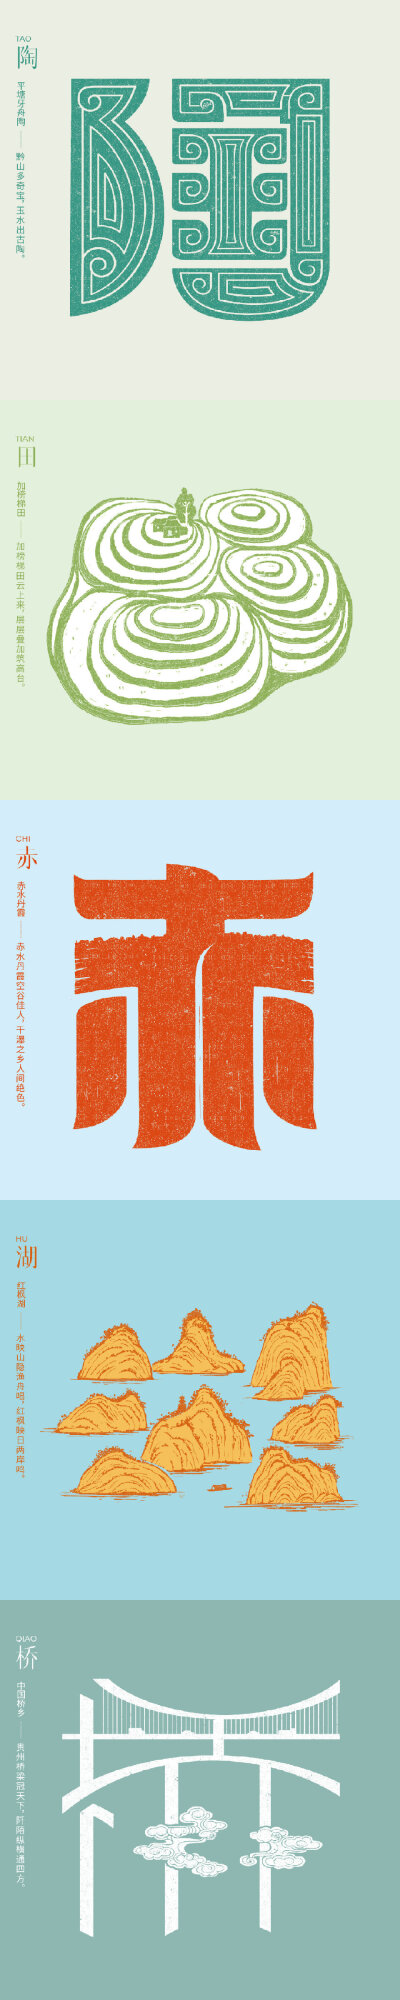 石昌鸿
《魅力中国》印象系列之“印象贵州”
字体设计